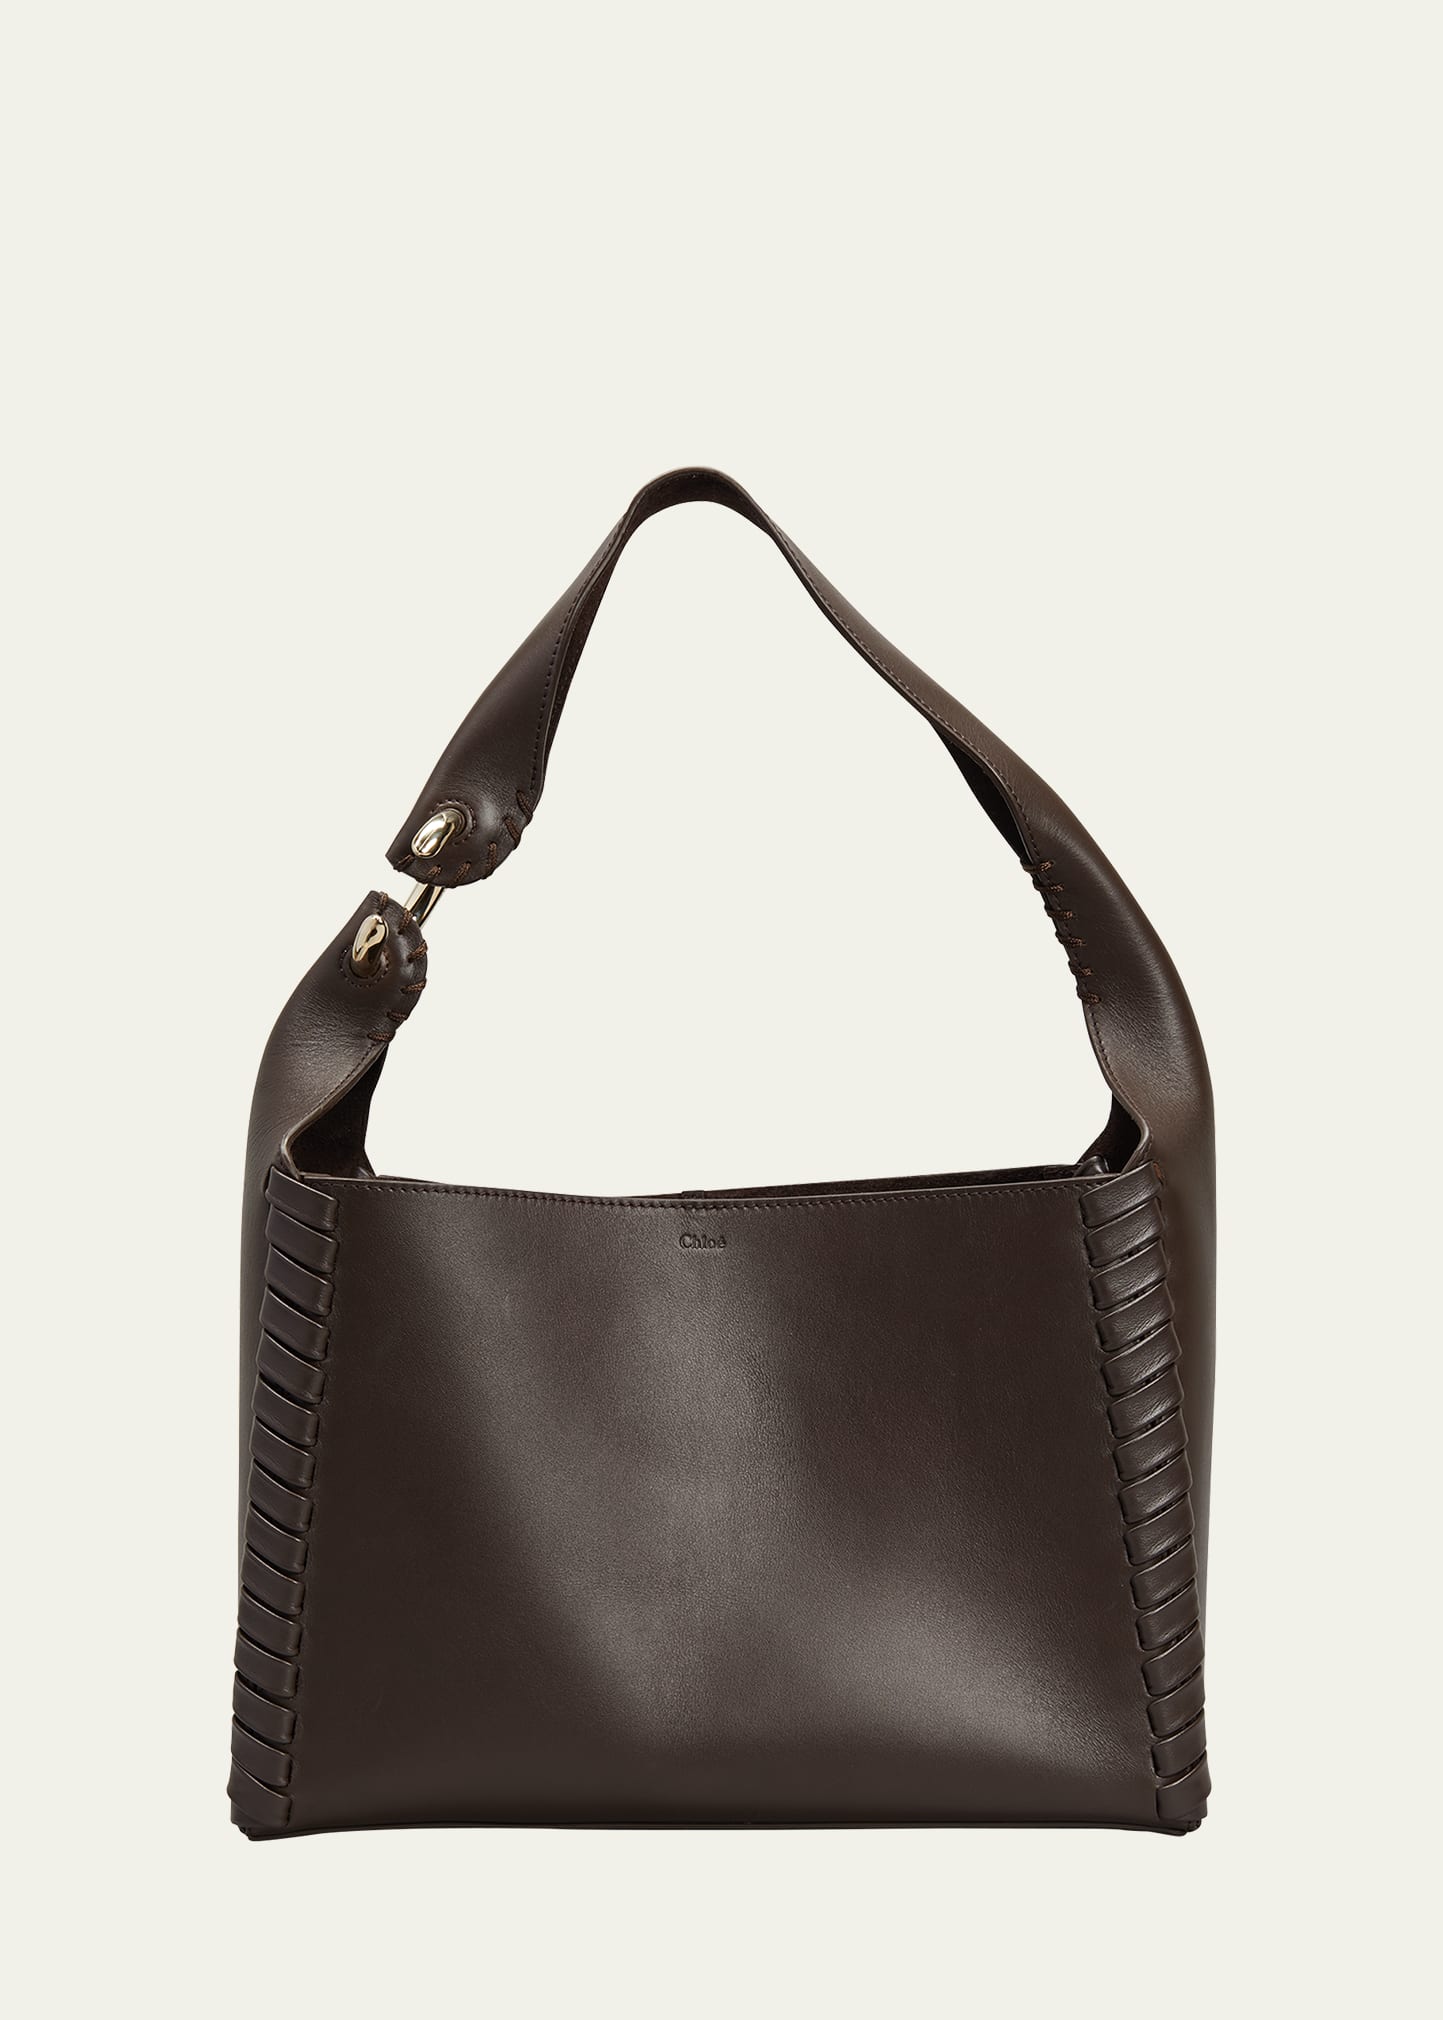 Mate Woven Leather Hobo Bag